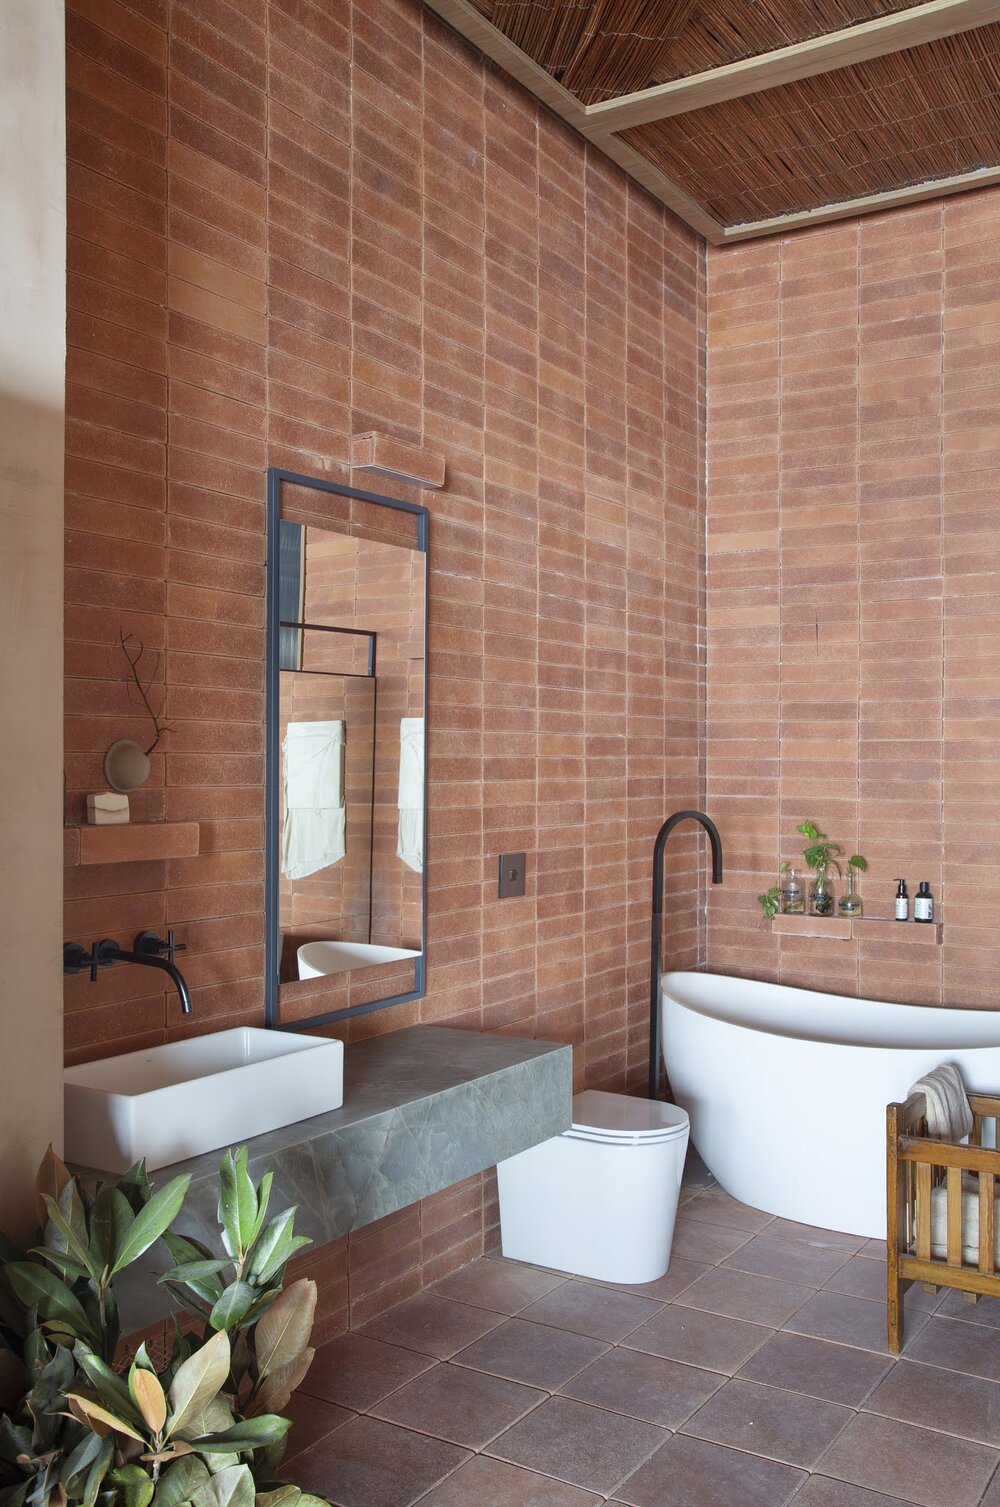 ilaria fatone inspirations une salle de bains en briques terrecuite apparentes